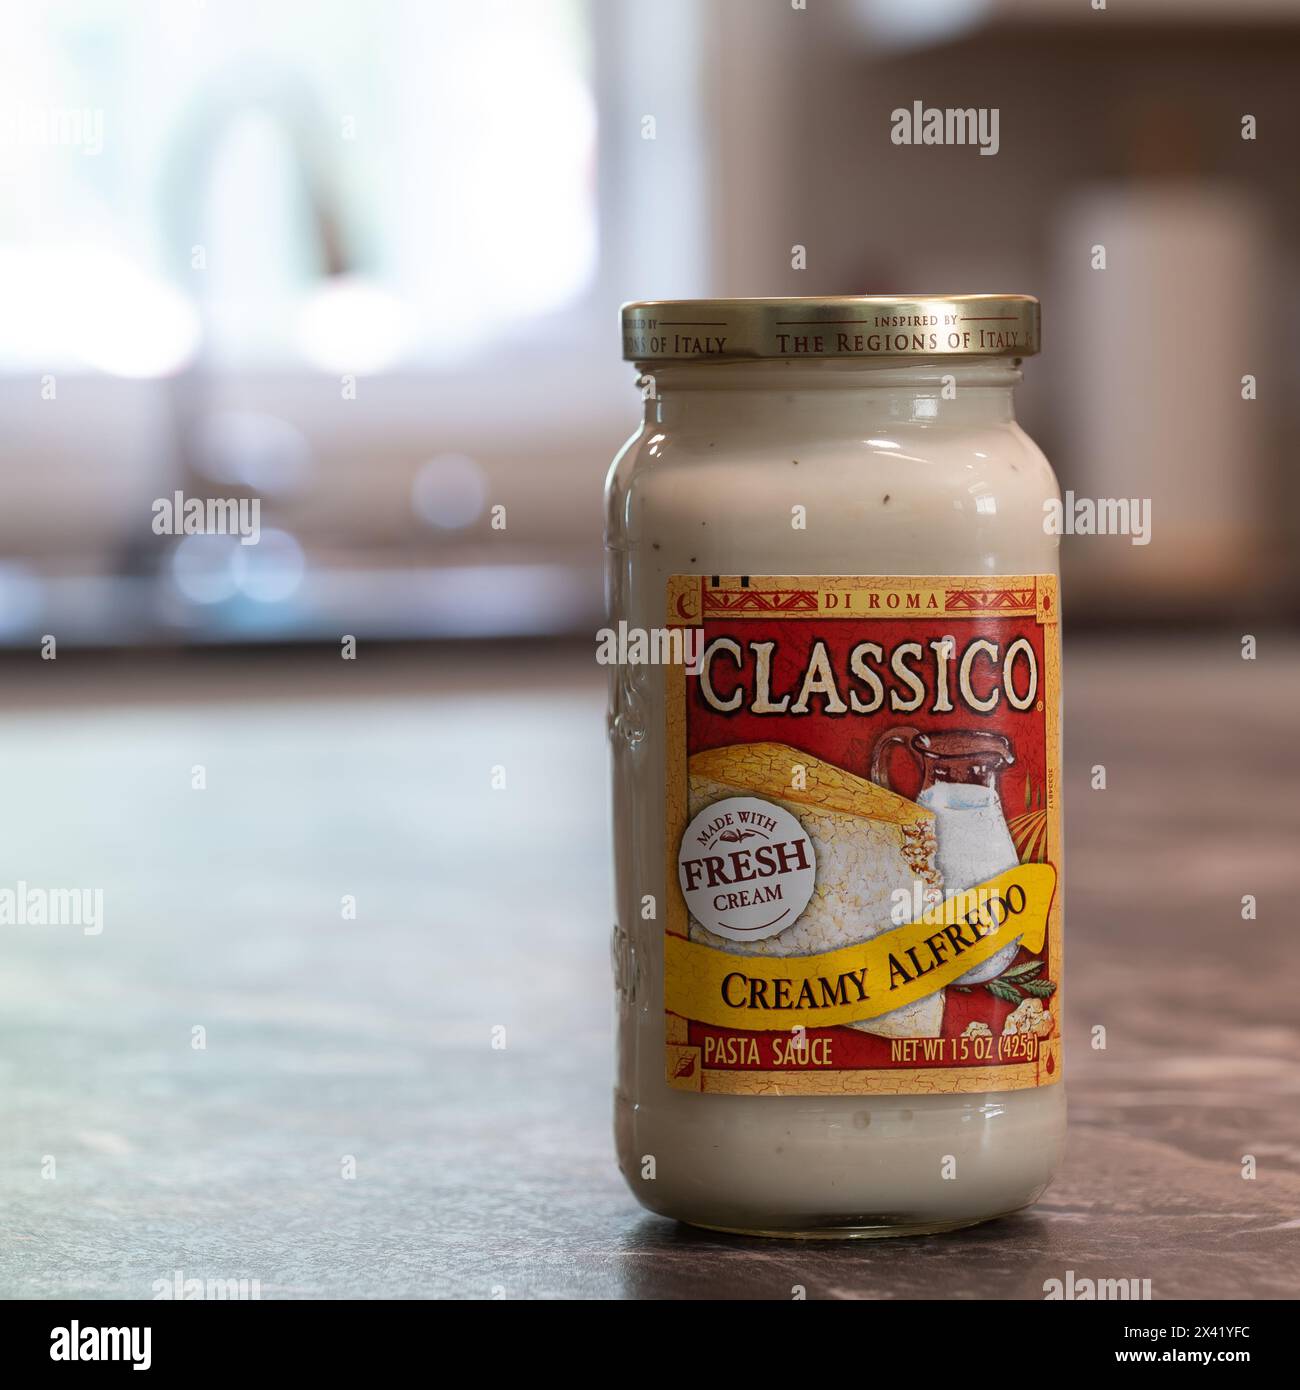 NISSWA, MN - 2 AUG 2021: Barattolo di crema alfredo marca Classico sul bancone della cucina. Preparato con panna fresca. Foto Stock